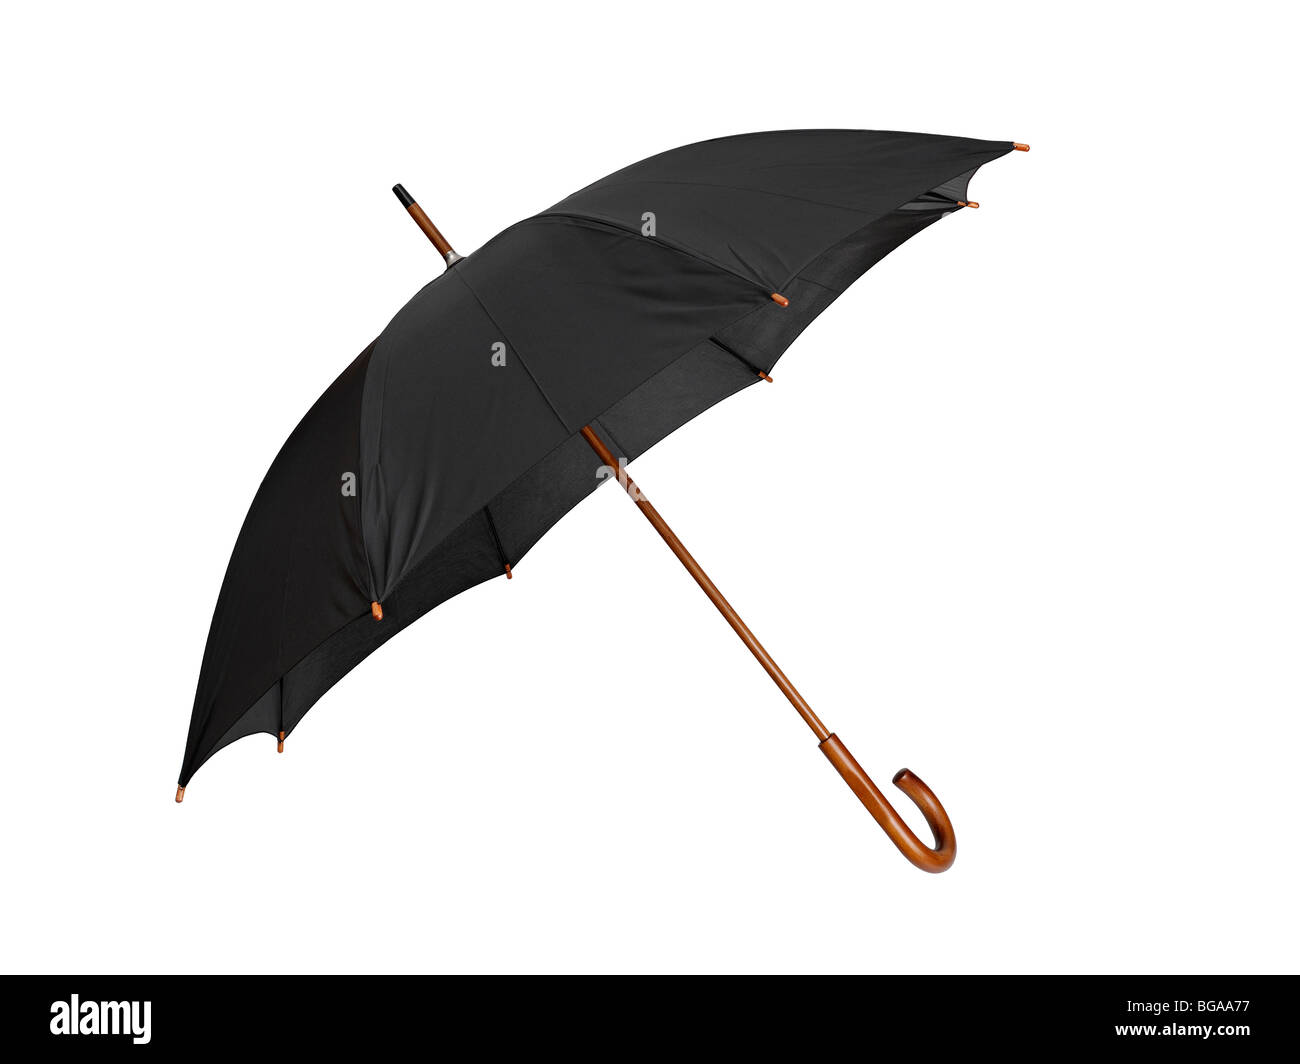 Ombrella immagini e fotografie stock ad alta risoluzione - Alamy